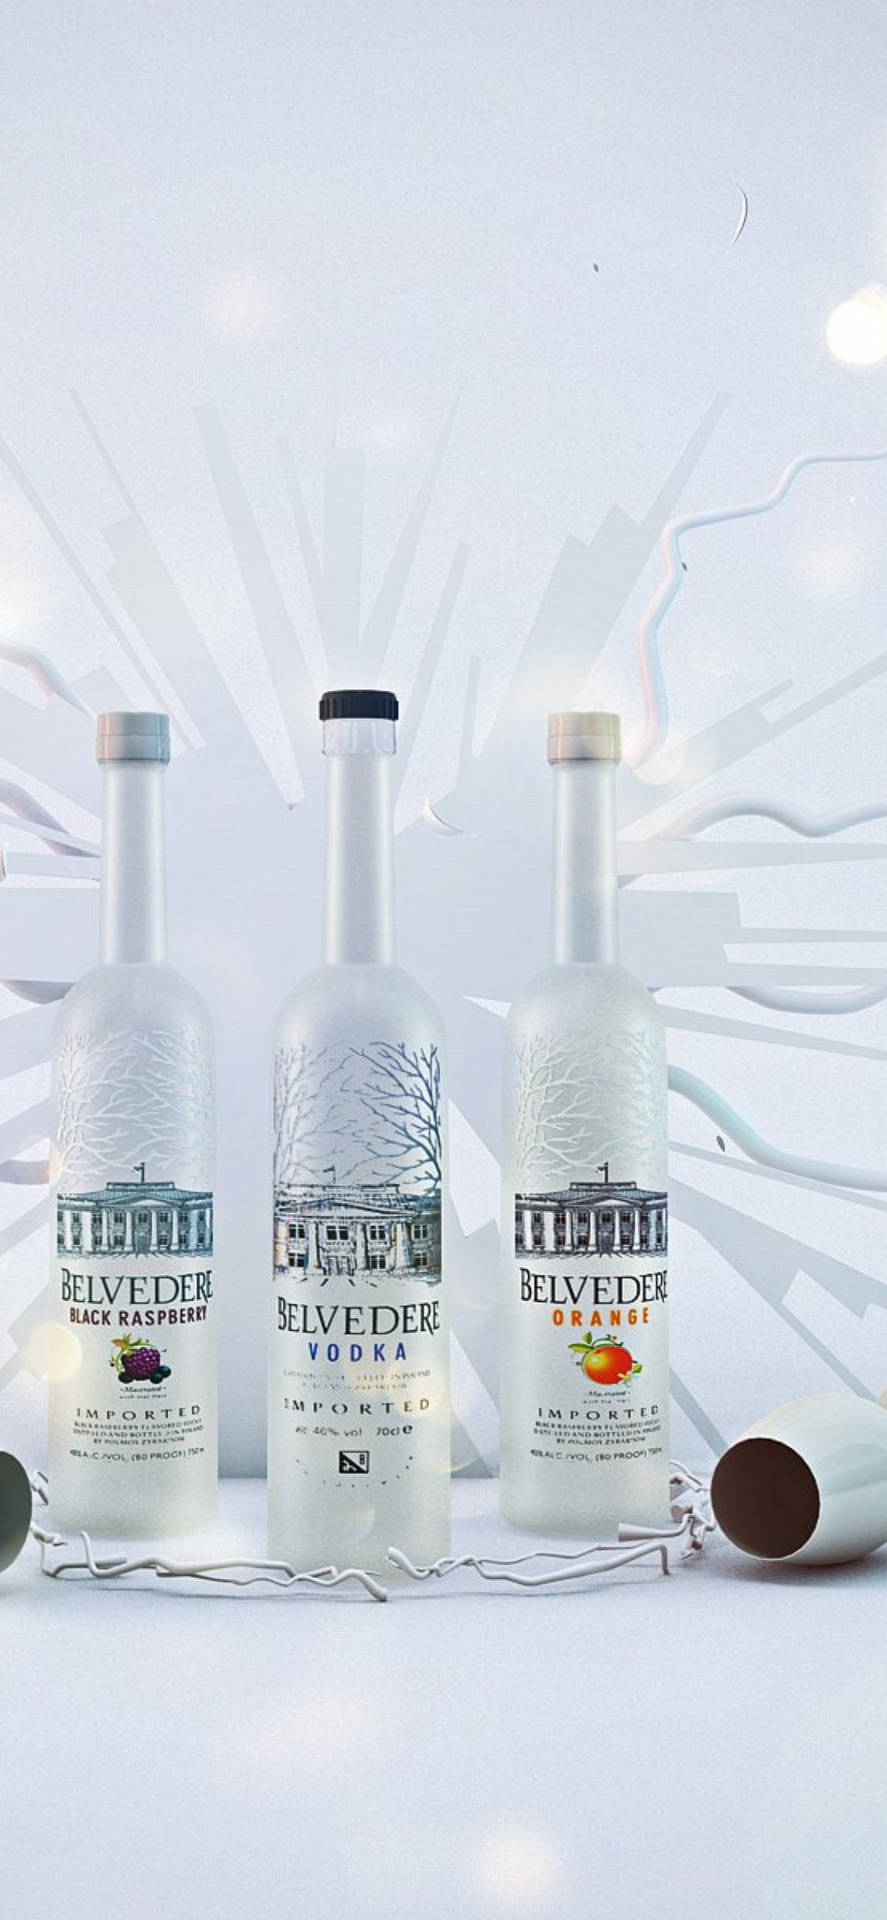 Klassisk Belvedere Vodka valg af Mac, der minder om en fuld Impasto palet. Wallpaper